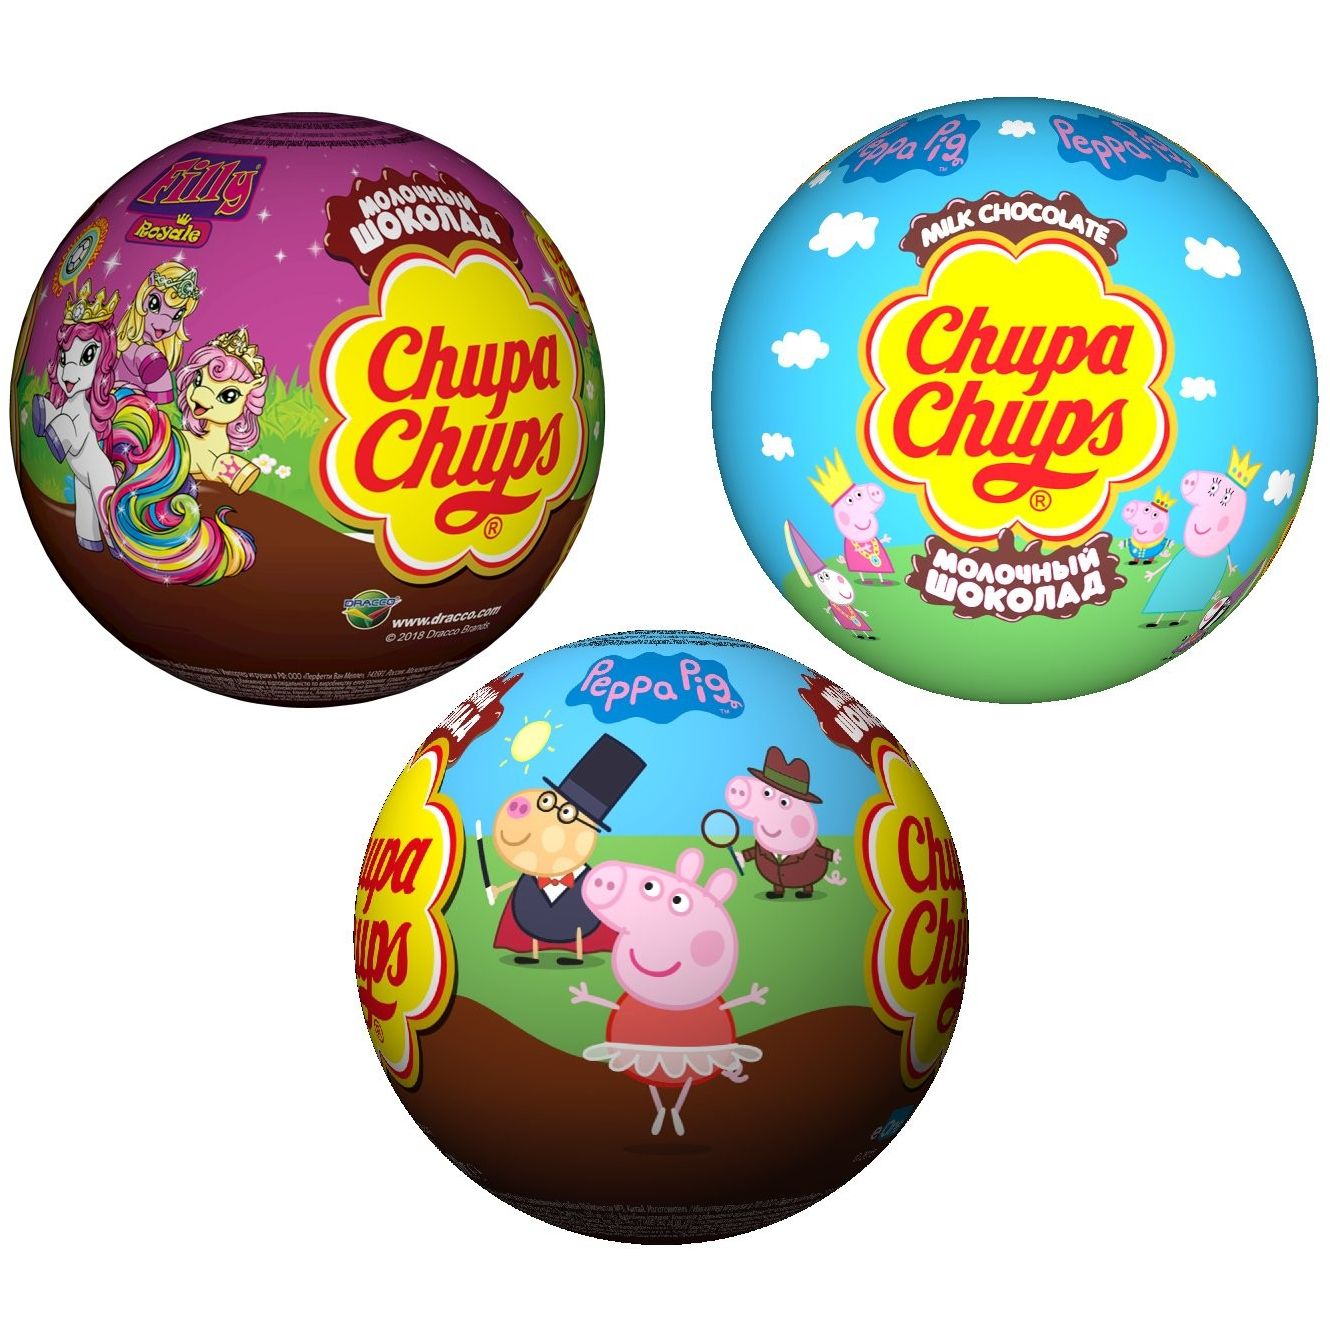 Чупа чупс шарики. Chupa chups шоколадный шар. Шоколадные шары chupa chups 20г. Шоколадный шар chupa chups с игрушкой-сюрпризом, 20 г. Шоколадный шар chupa chups с игрушкой 20г.